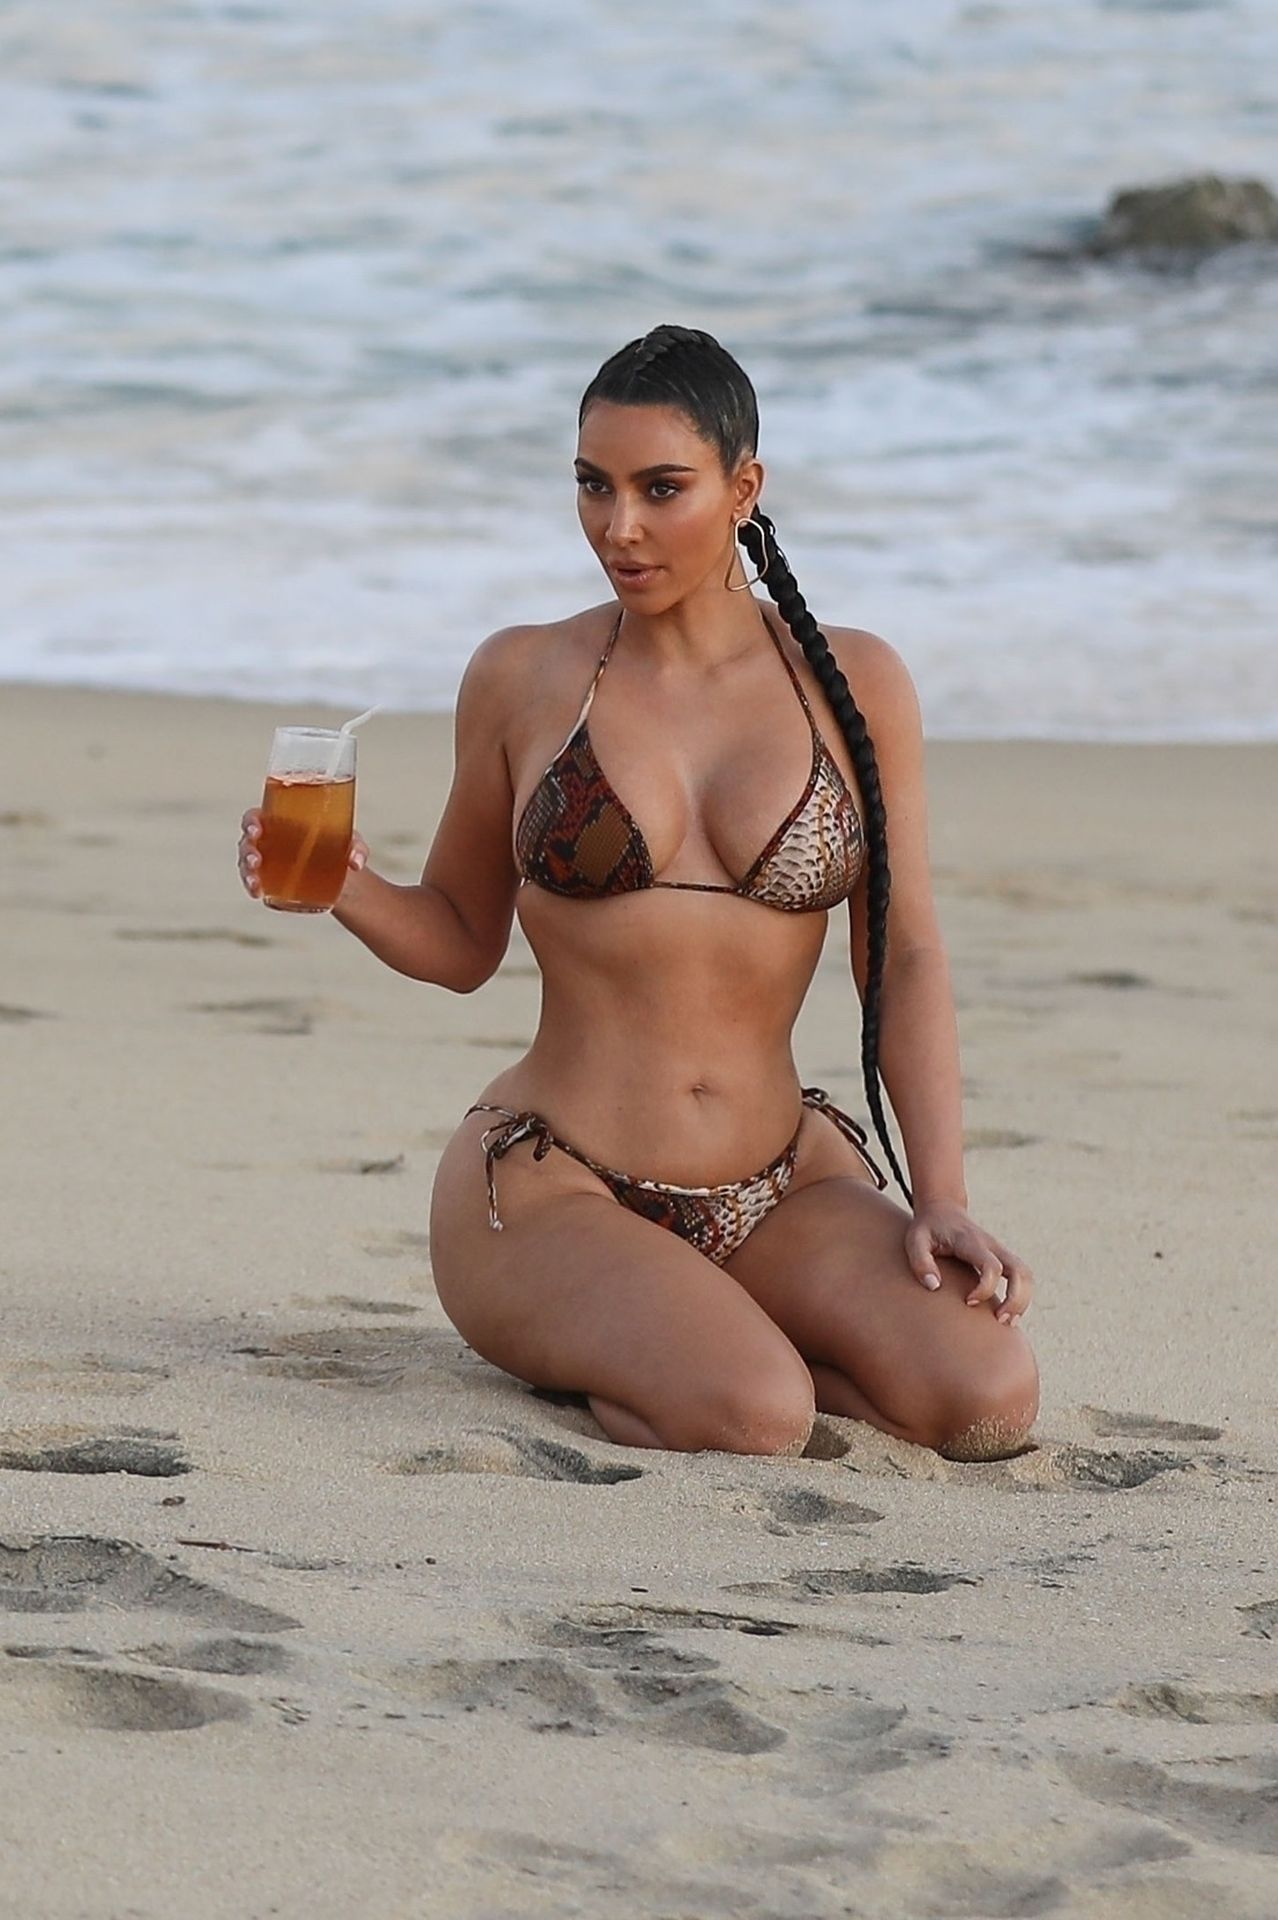 Kim Kardashian Poses in a Sexy Bikini